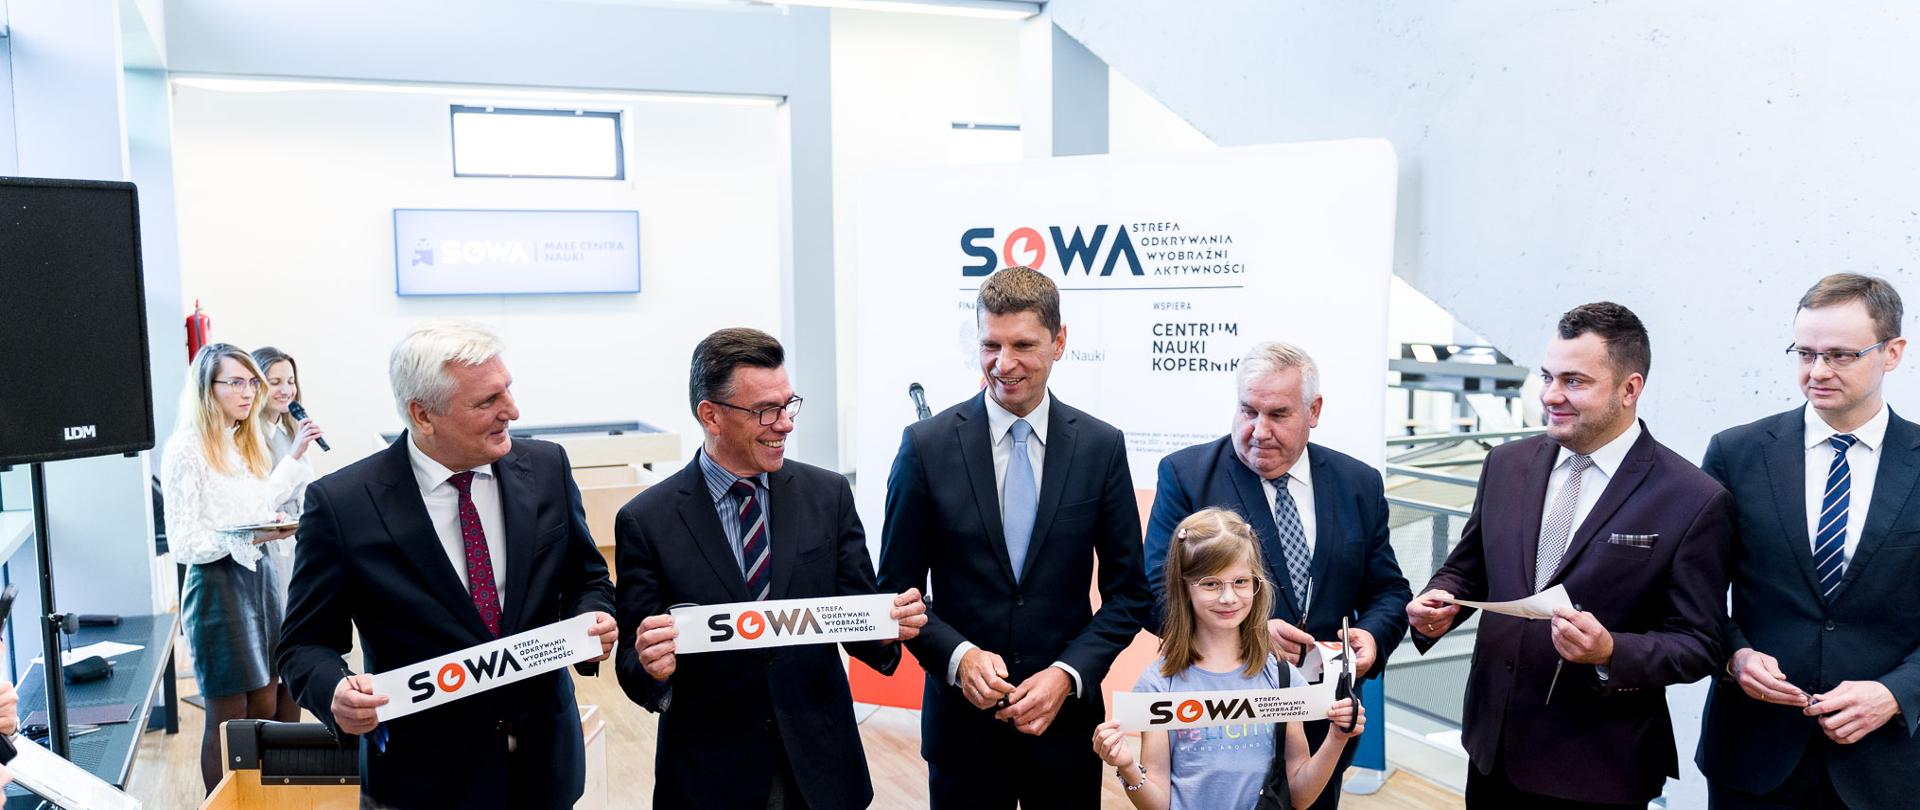 Sześciu mężczyzn i dziewczynka trzymają fragmenty przeciętej wstęgi z napisem SOWA 